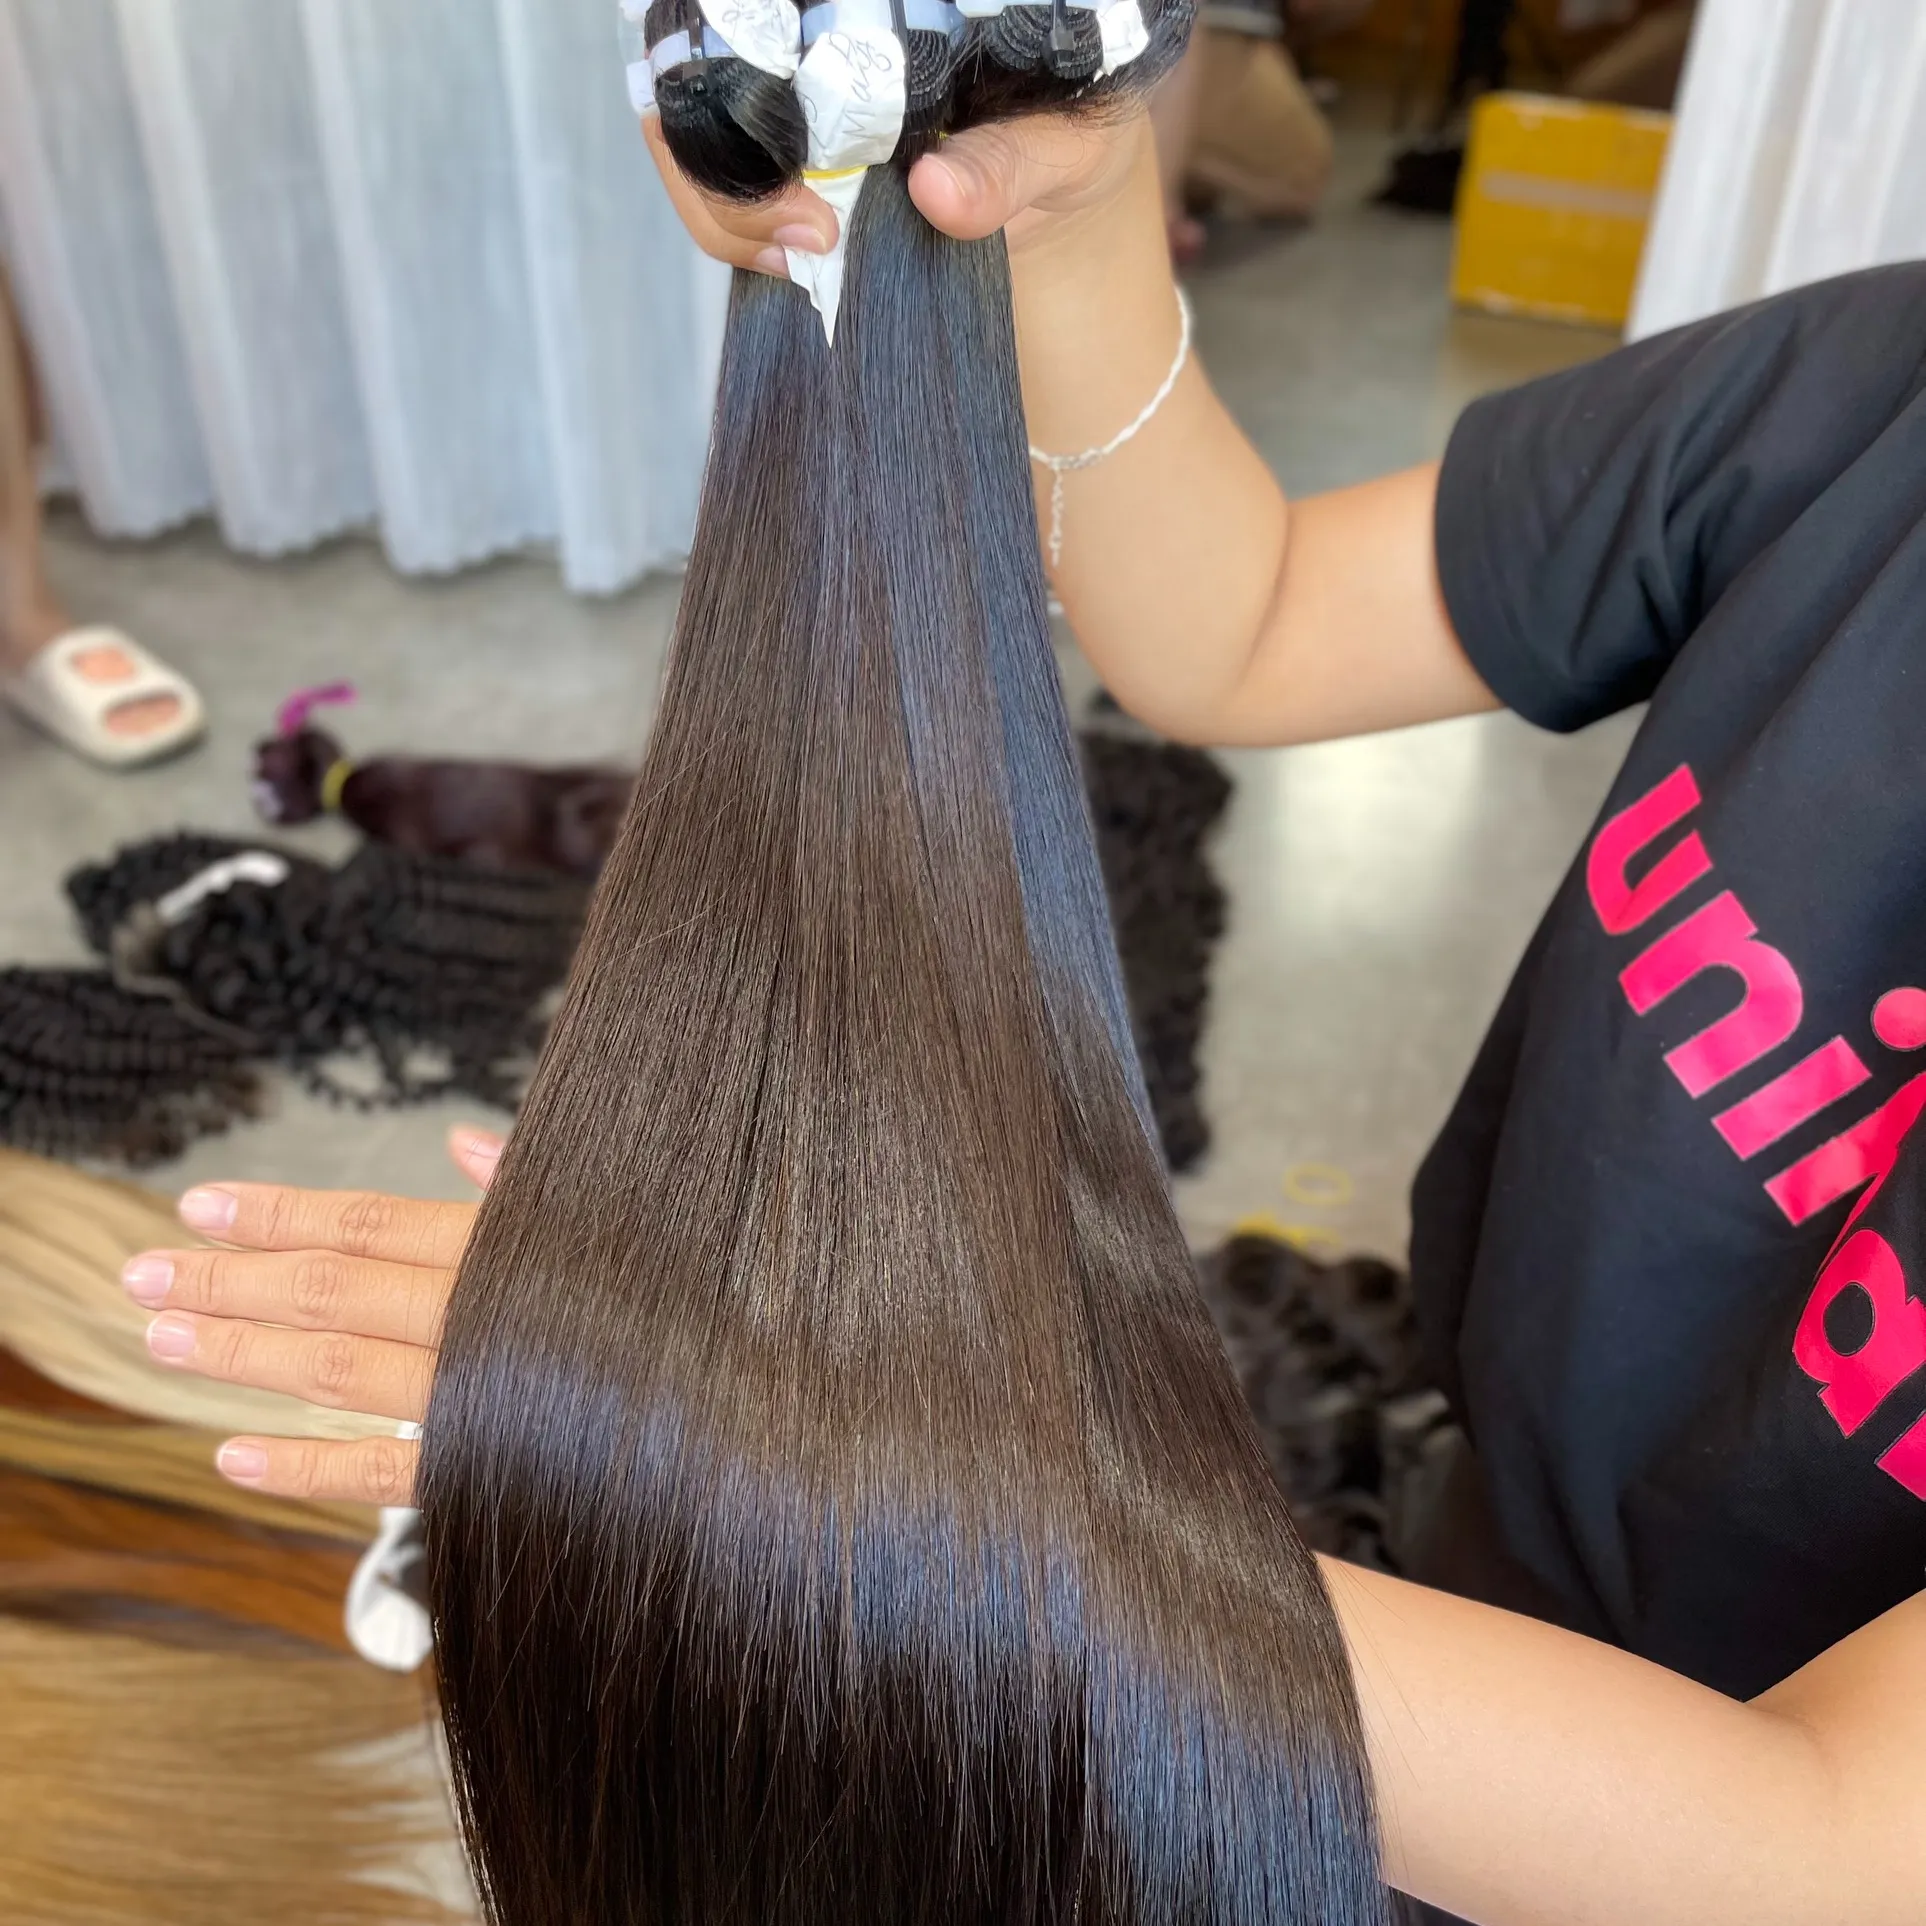 High Quality Hair Weave Extension 100% Human Virgin Vietnamese Raw Hair Supplier Bundles Raw Virgin Cuticle Aligned Hair